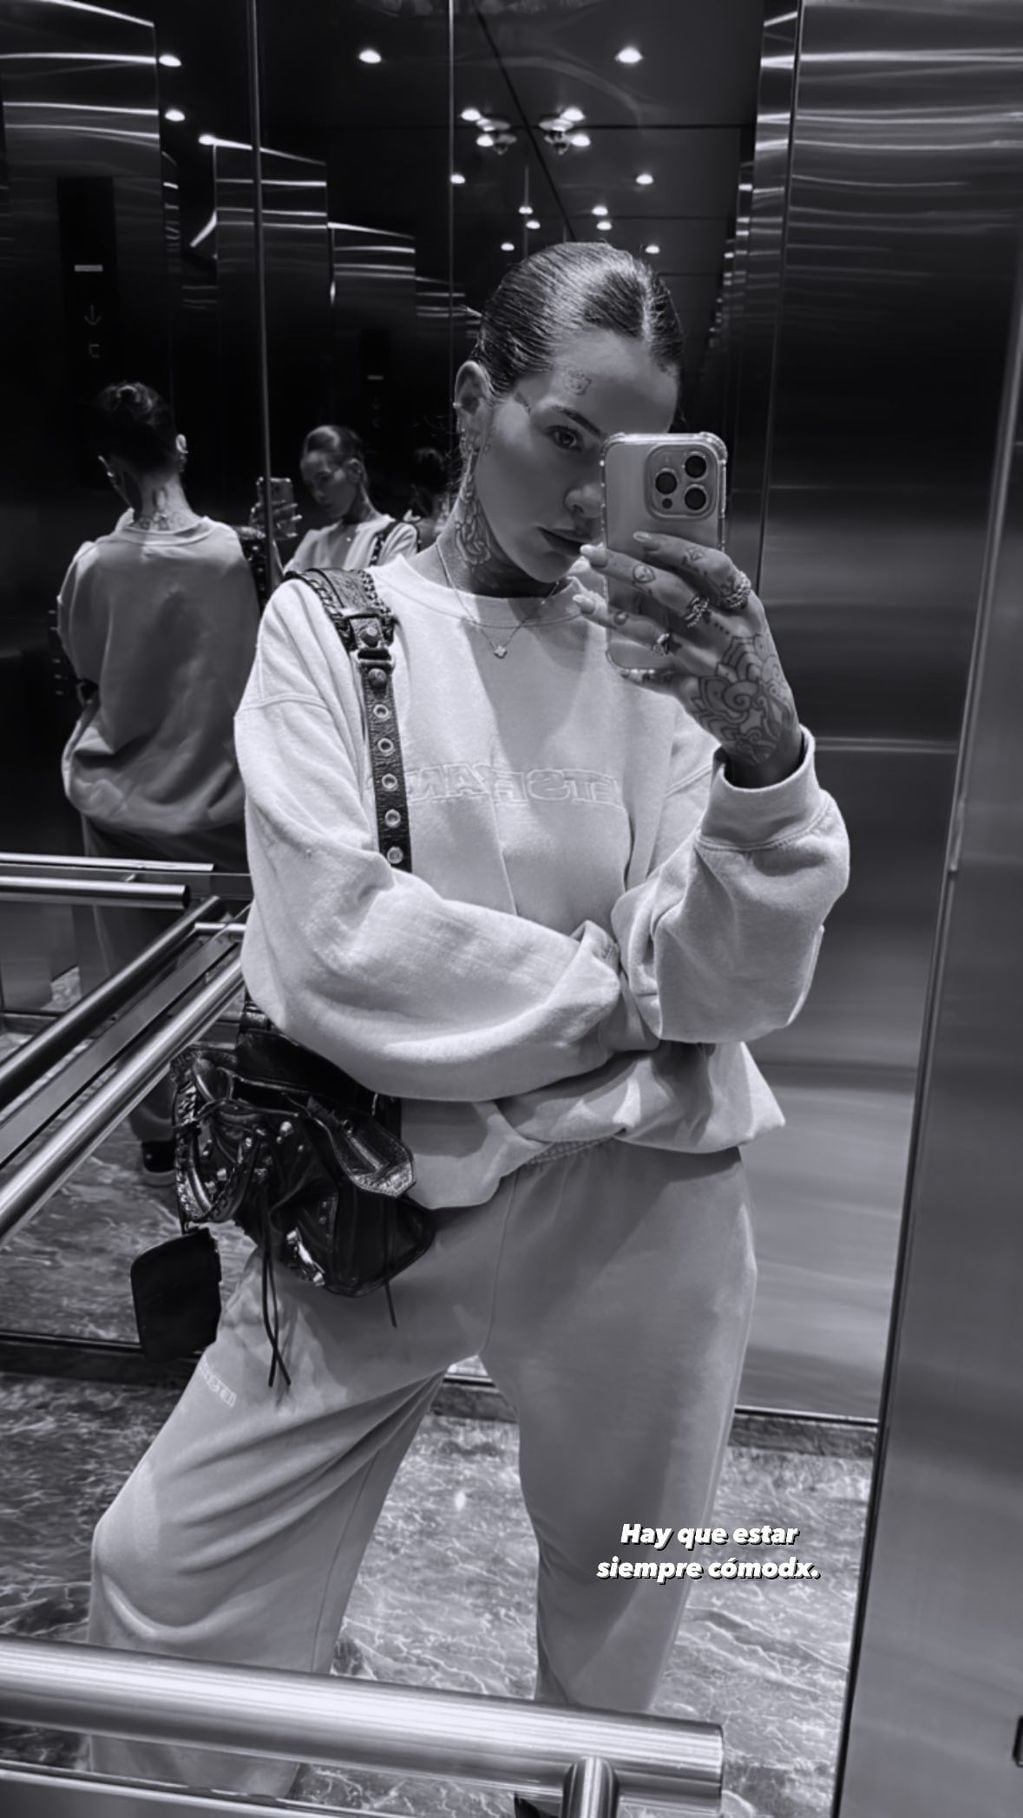 La influencer posó frente al espejo con un look urbano y sorprendió a sus seguidores / Foto: Instagram